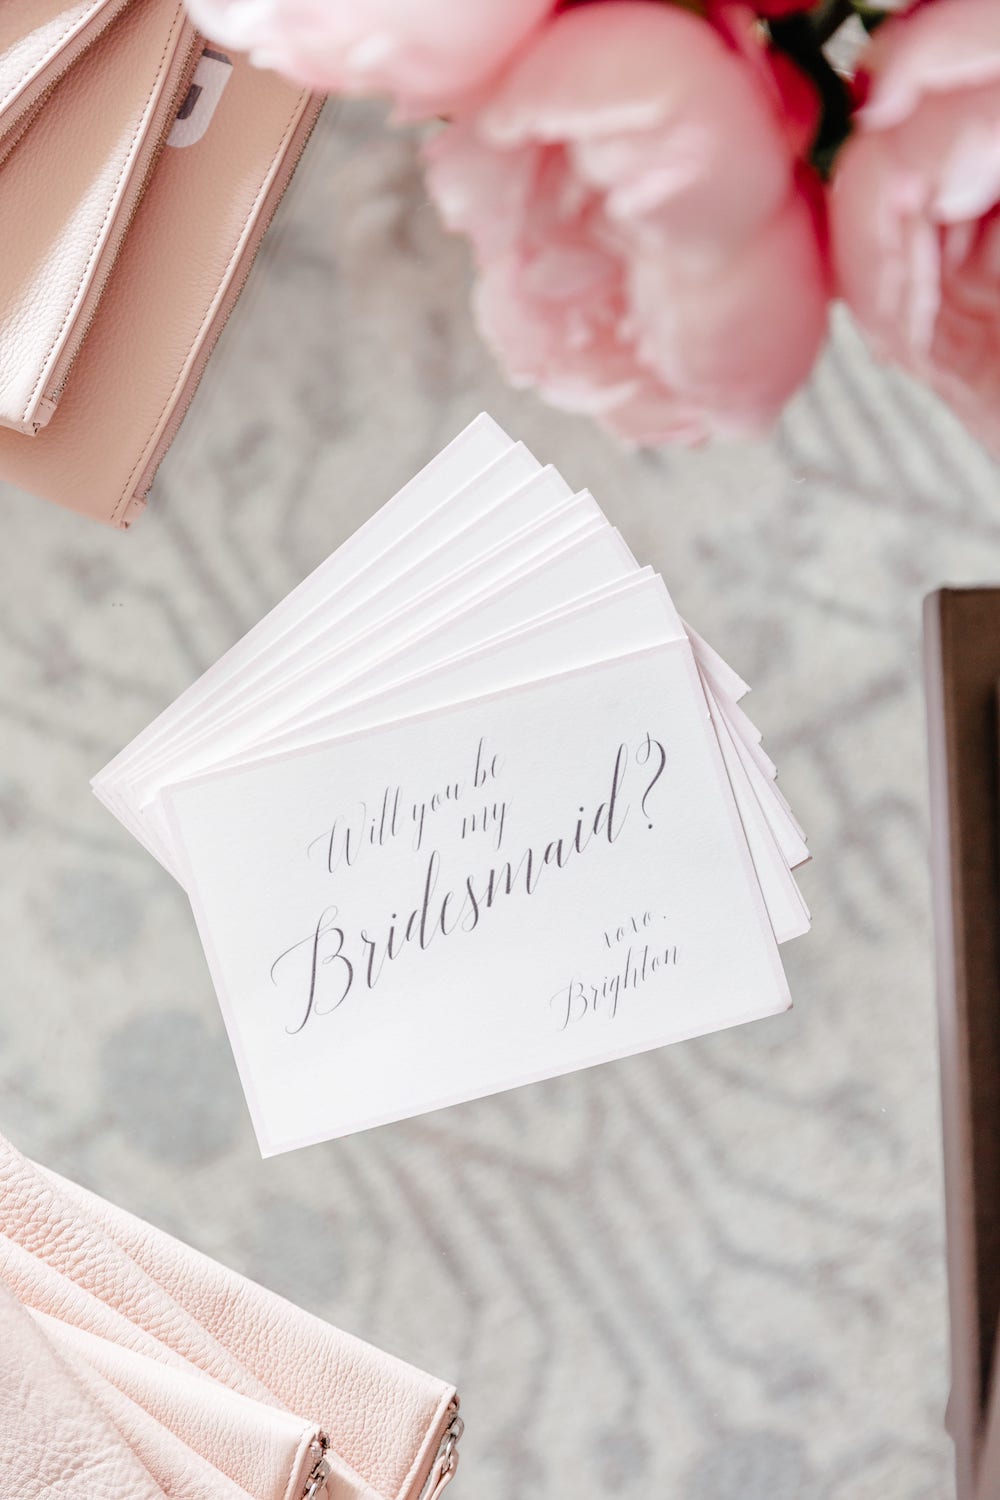 will you be my bridesmaid? custom card asking bridesmaid